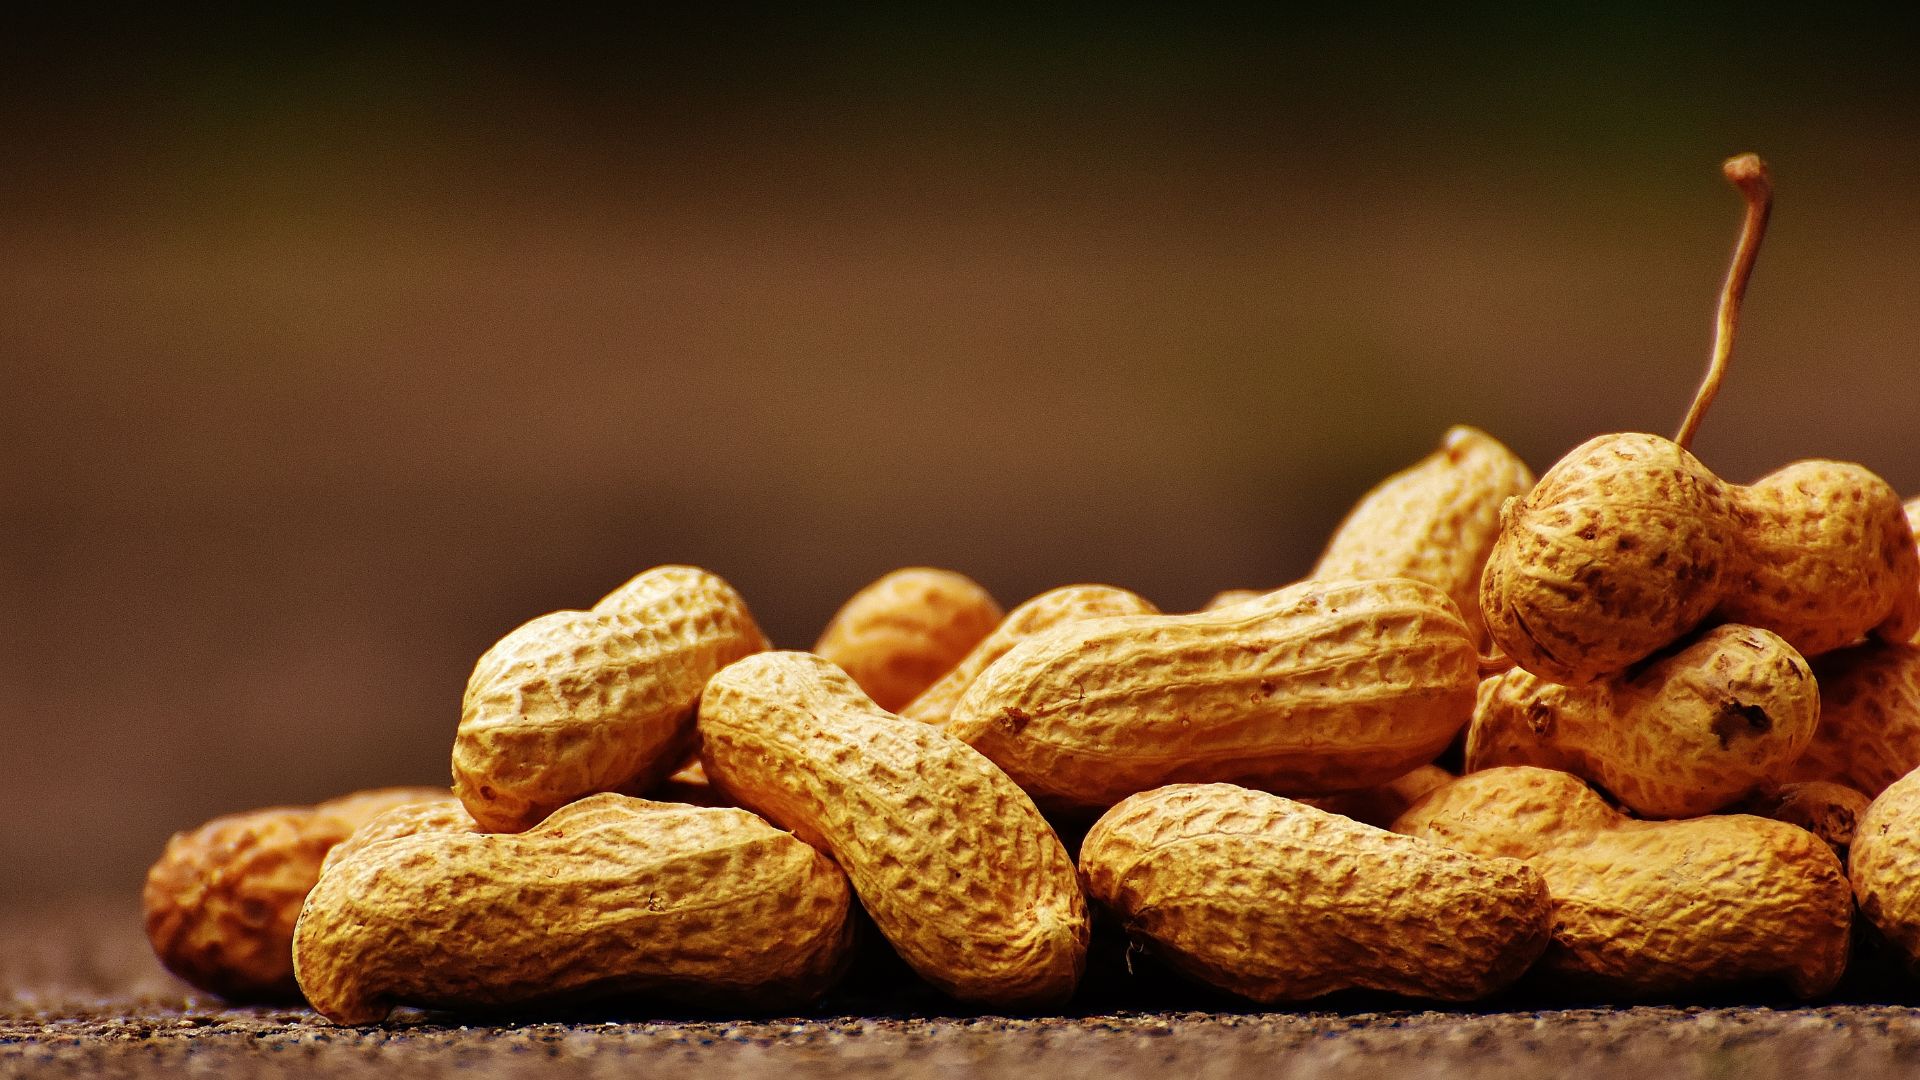 Peanuts (Groundnut)